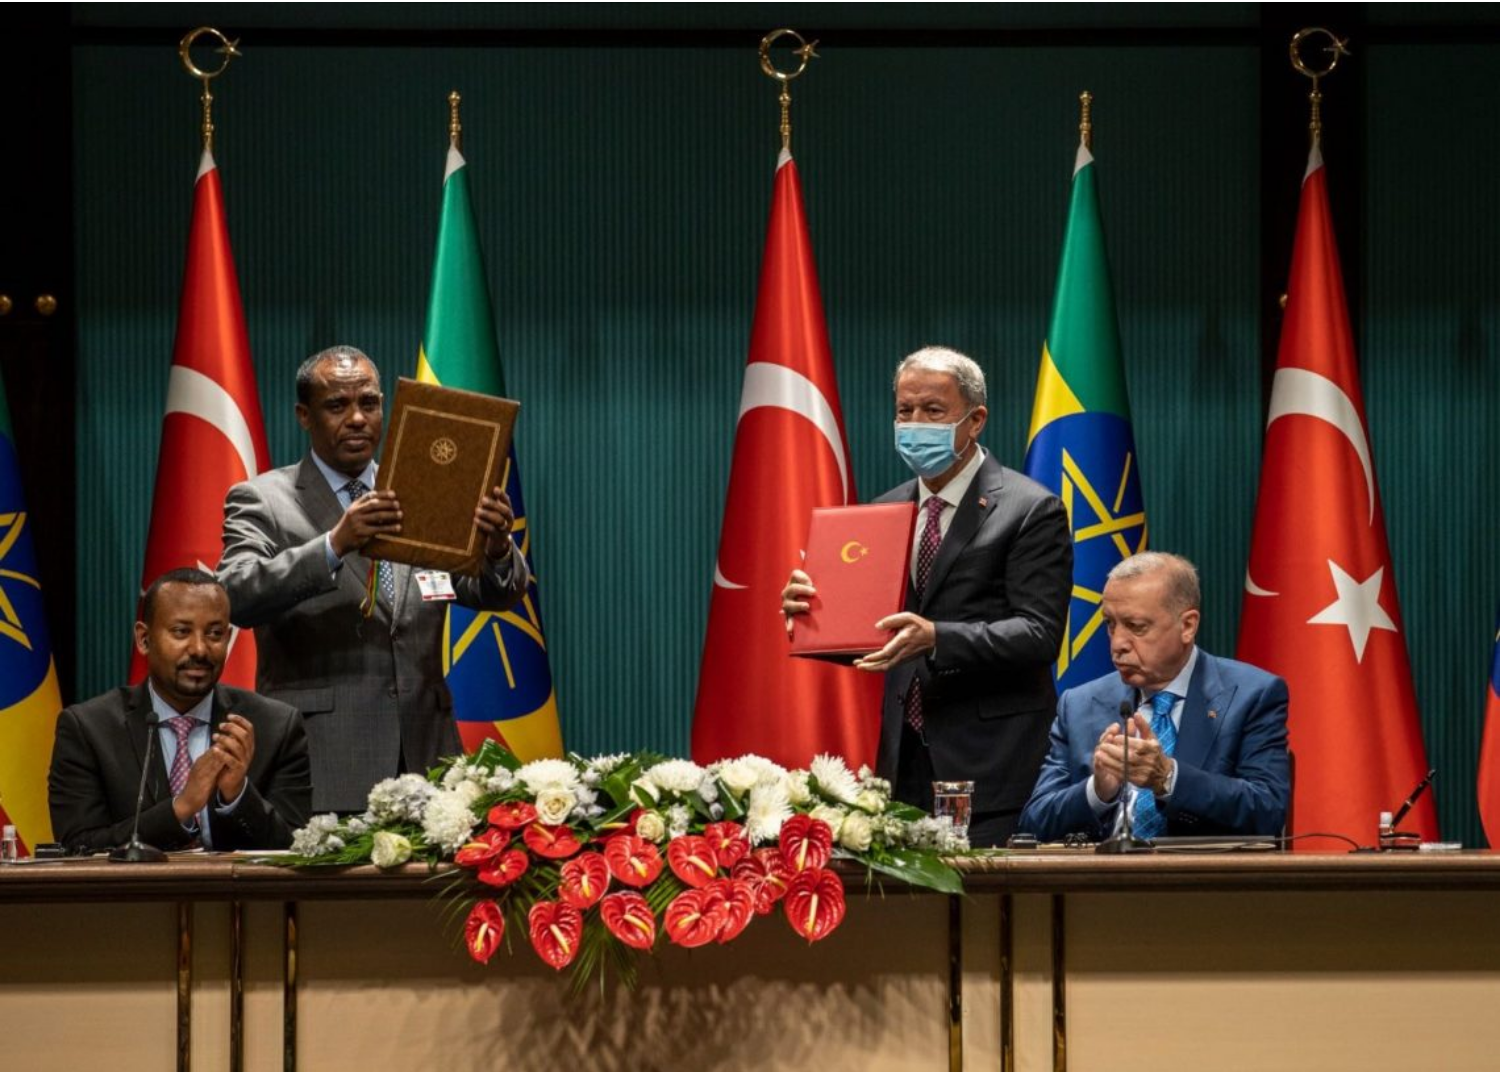 La Turchia ratificherà un accordo militare con l'Etiopia tra gli sforzi di riavvicinamento con l'Egitto